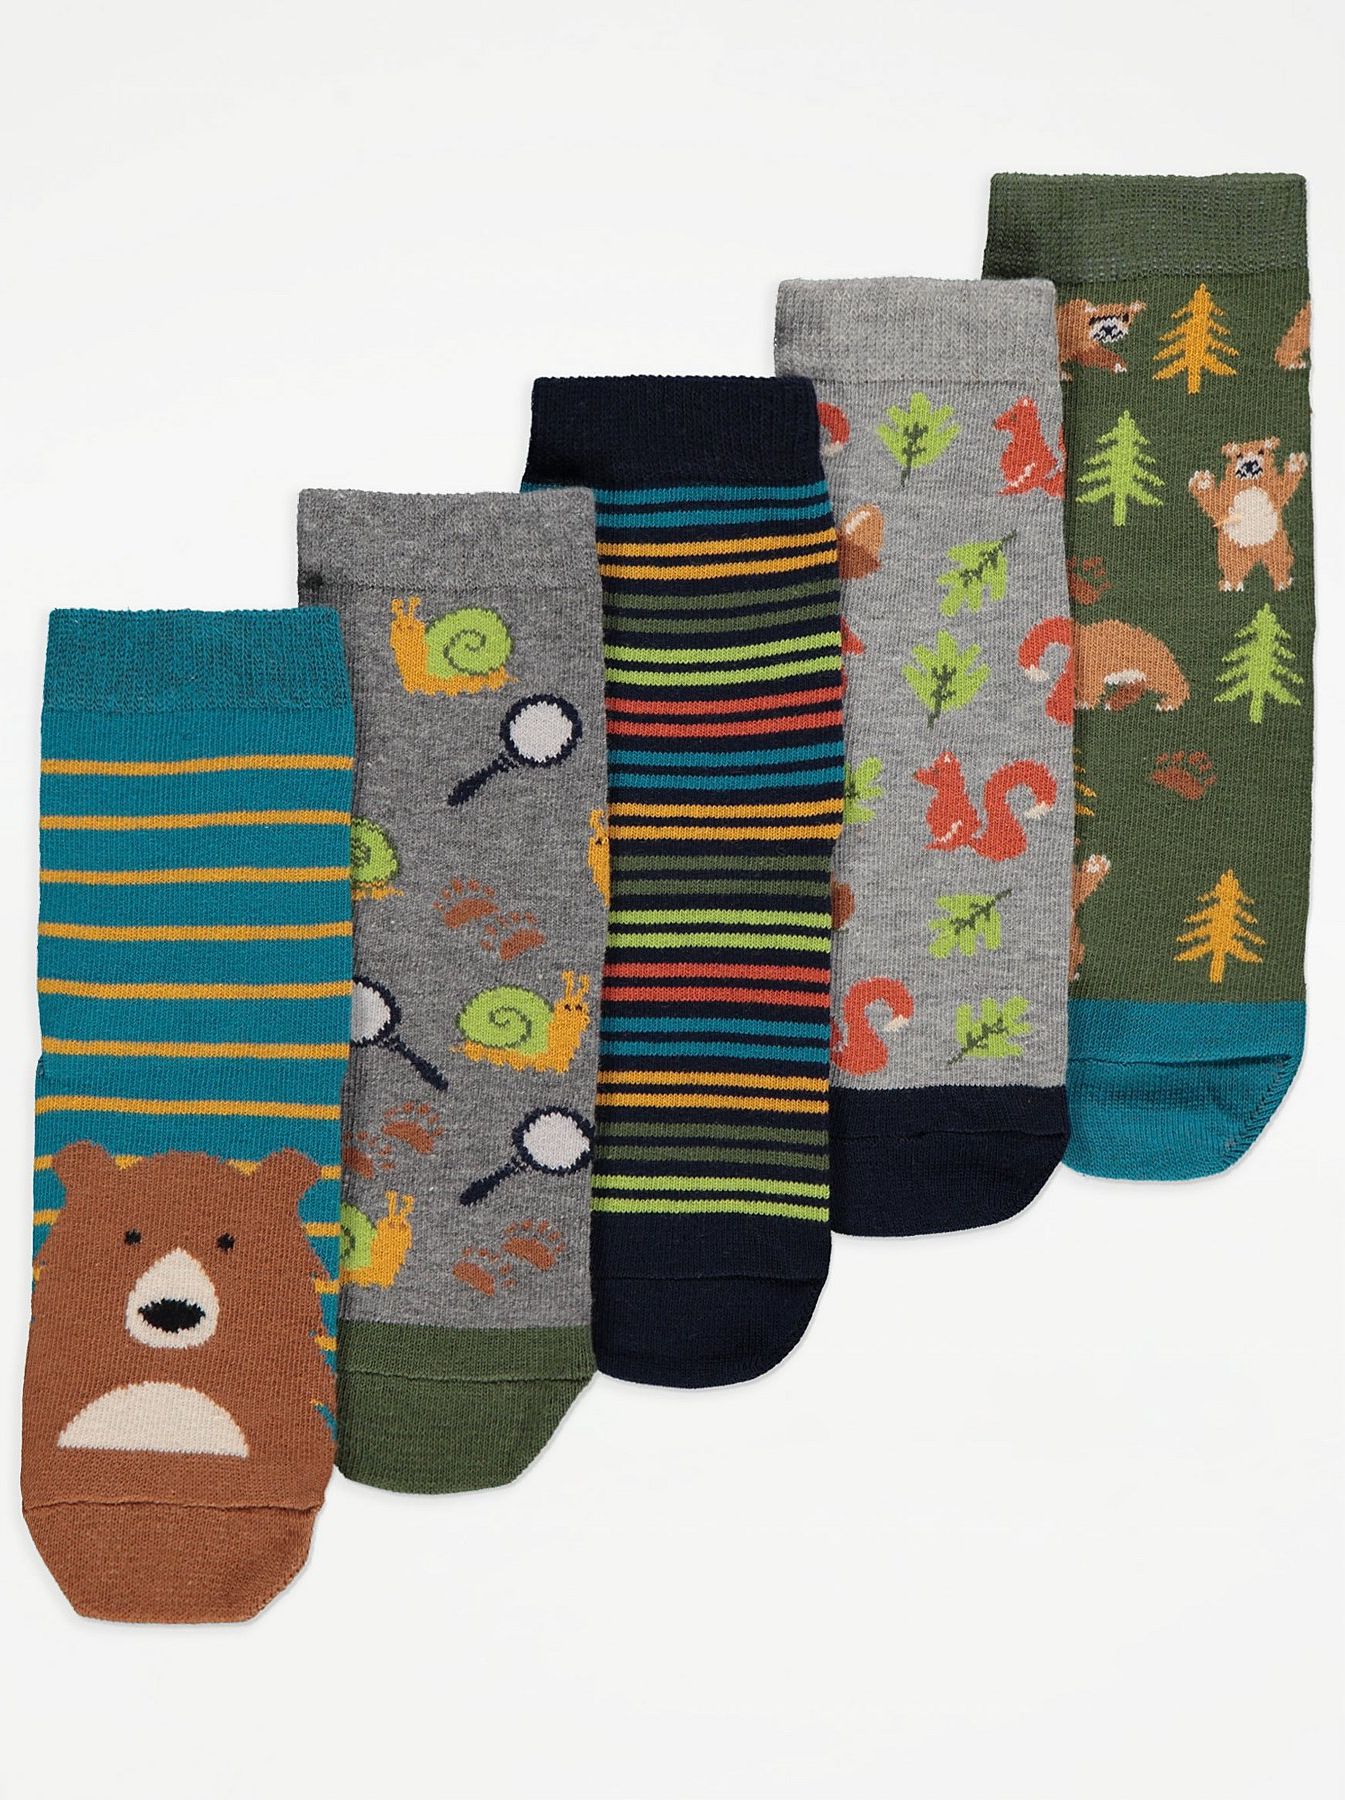 Chlapecké ponožky GEORGE, 5 ks v balení, motiv medvěd v lese Velikost: EU 23 - 26.5 (2 - 3 roky) - obrázek 1